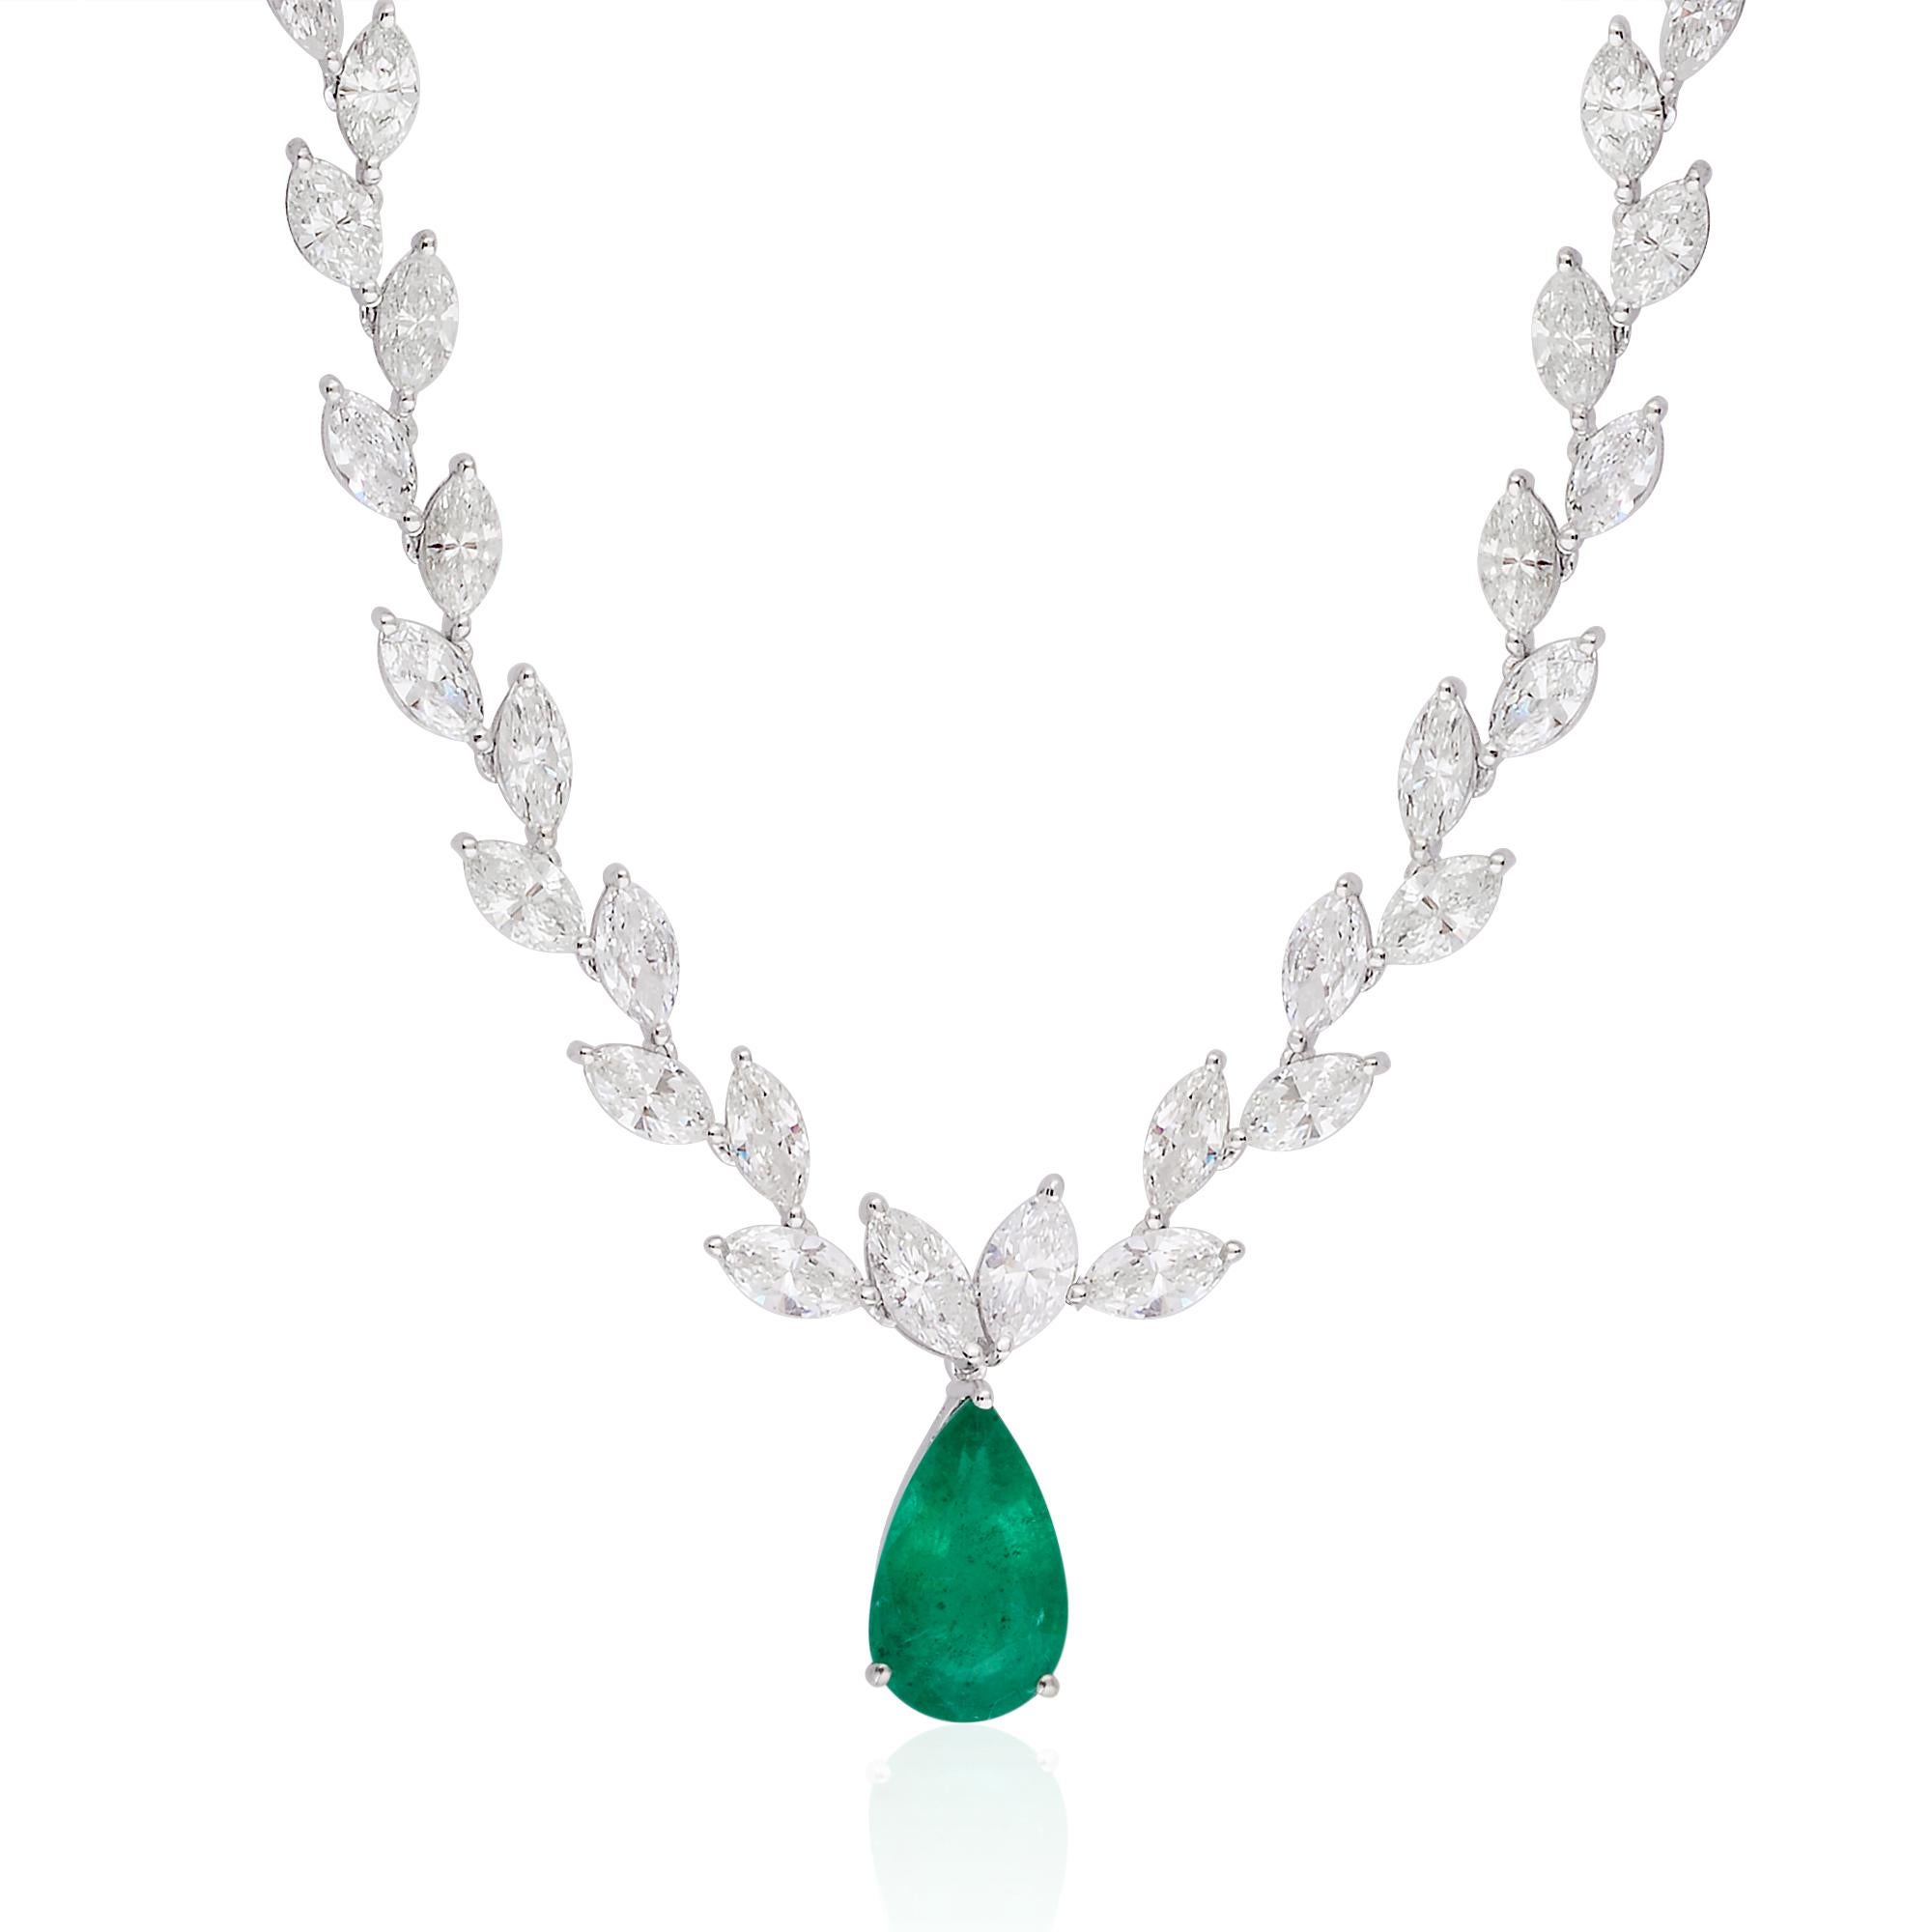 Ajoutez de la vivacité à votre look glamour en portant ce collier de Spectrum Jewels. Ce collier, dont le design ethnique a été réalisé à la main, est orné d'émeraudes pour un effet plus féminin. Portez ce collier en or blanc 18 carats avec vos plus